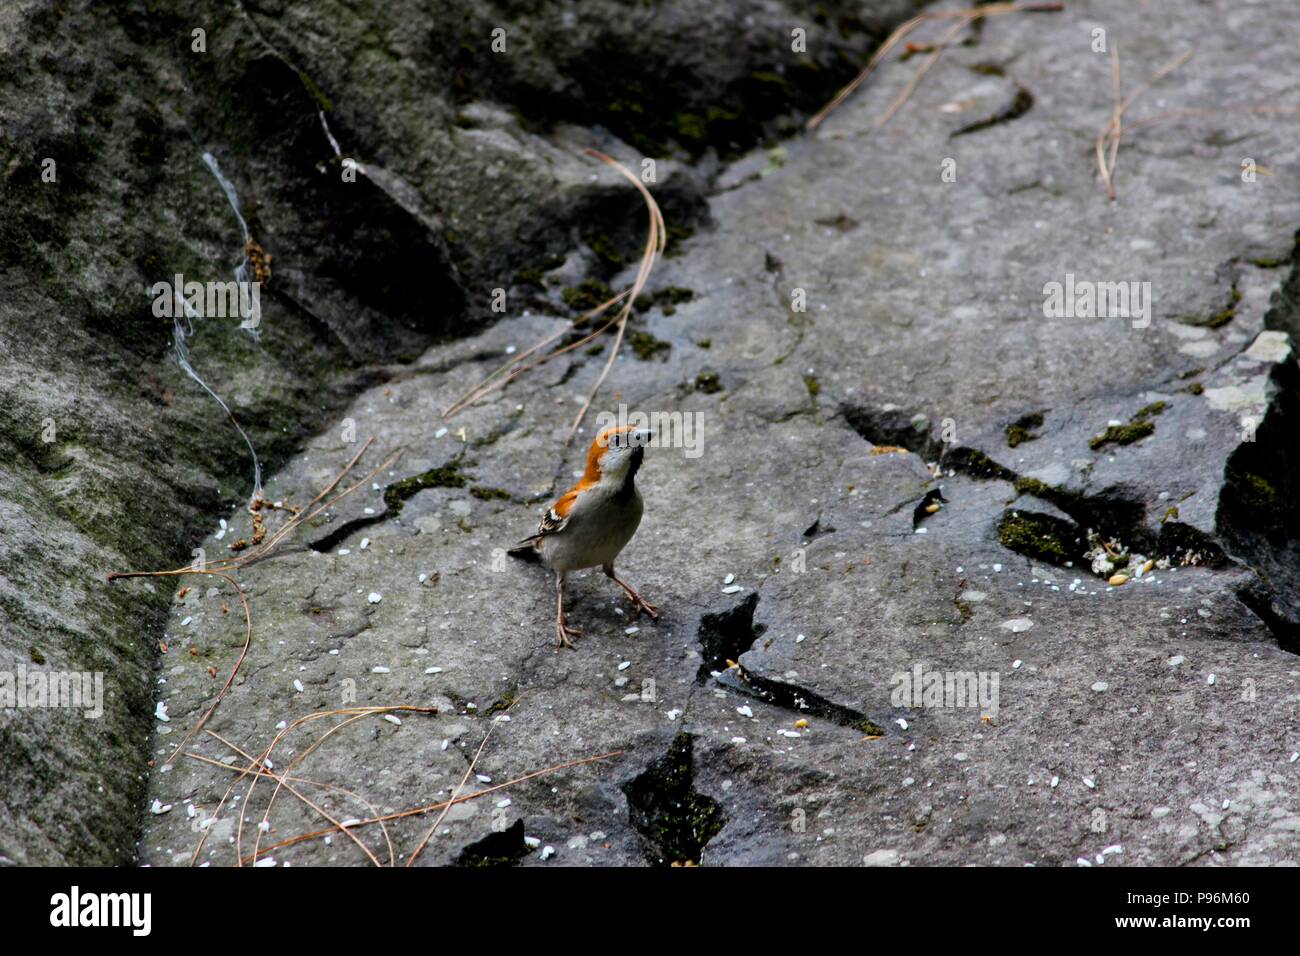 Bird on the rock Stock Photo